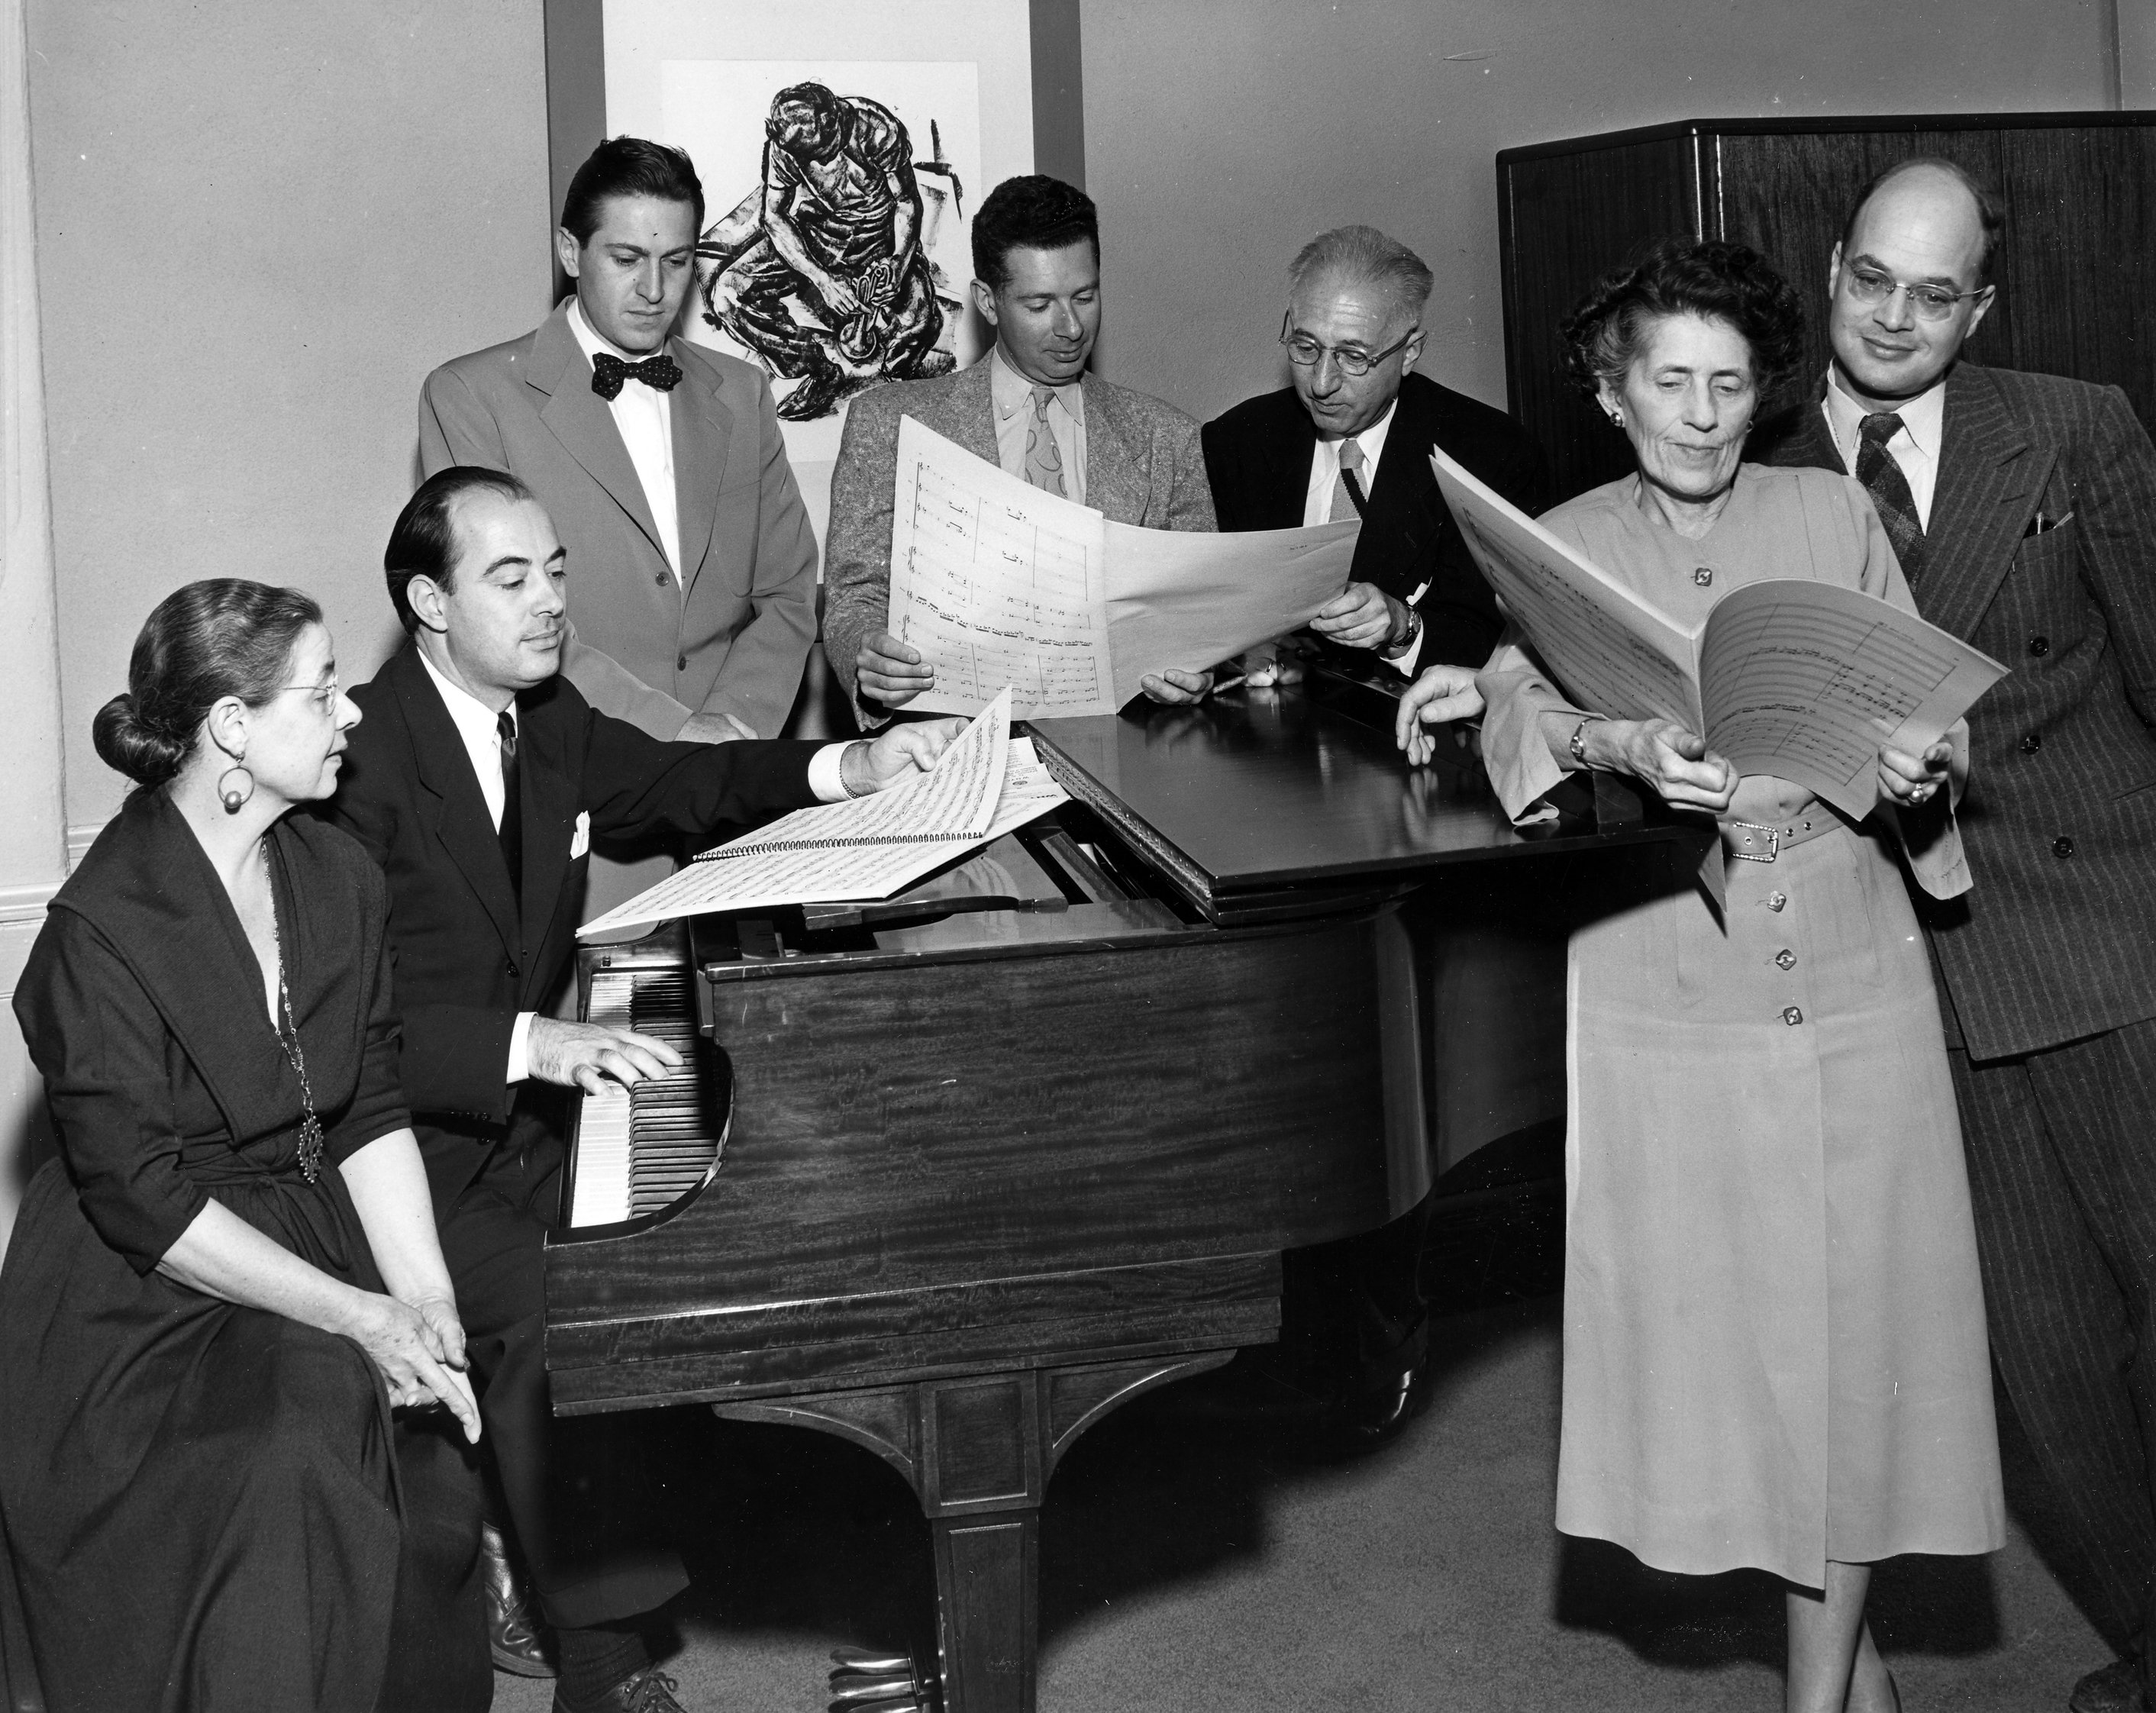 From left to right: Julia Howell Overshiner, Halsey Stevens, Leon Kirchner, Ellis B. Kohs, Ernest Kanitz, Mabel Woodworth, Ingolf Dahl.